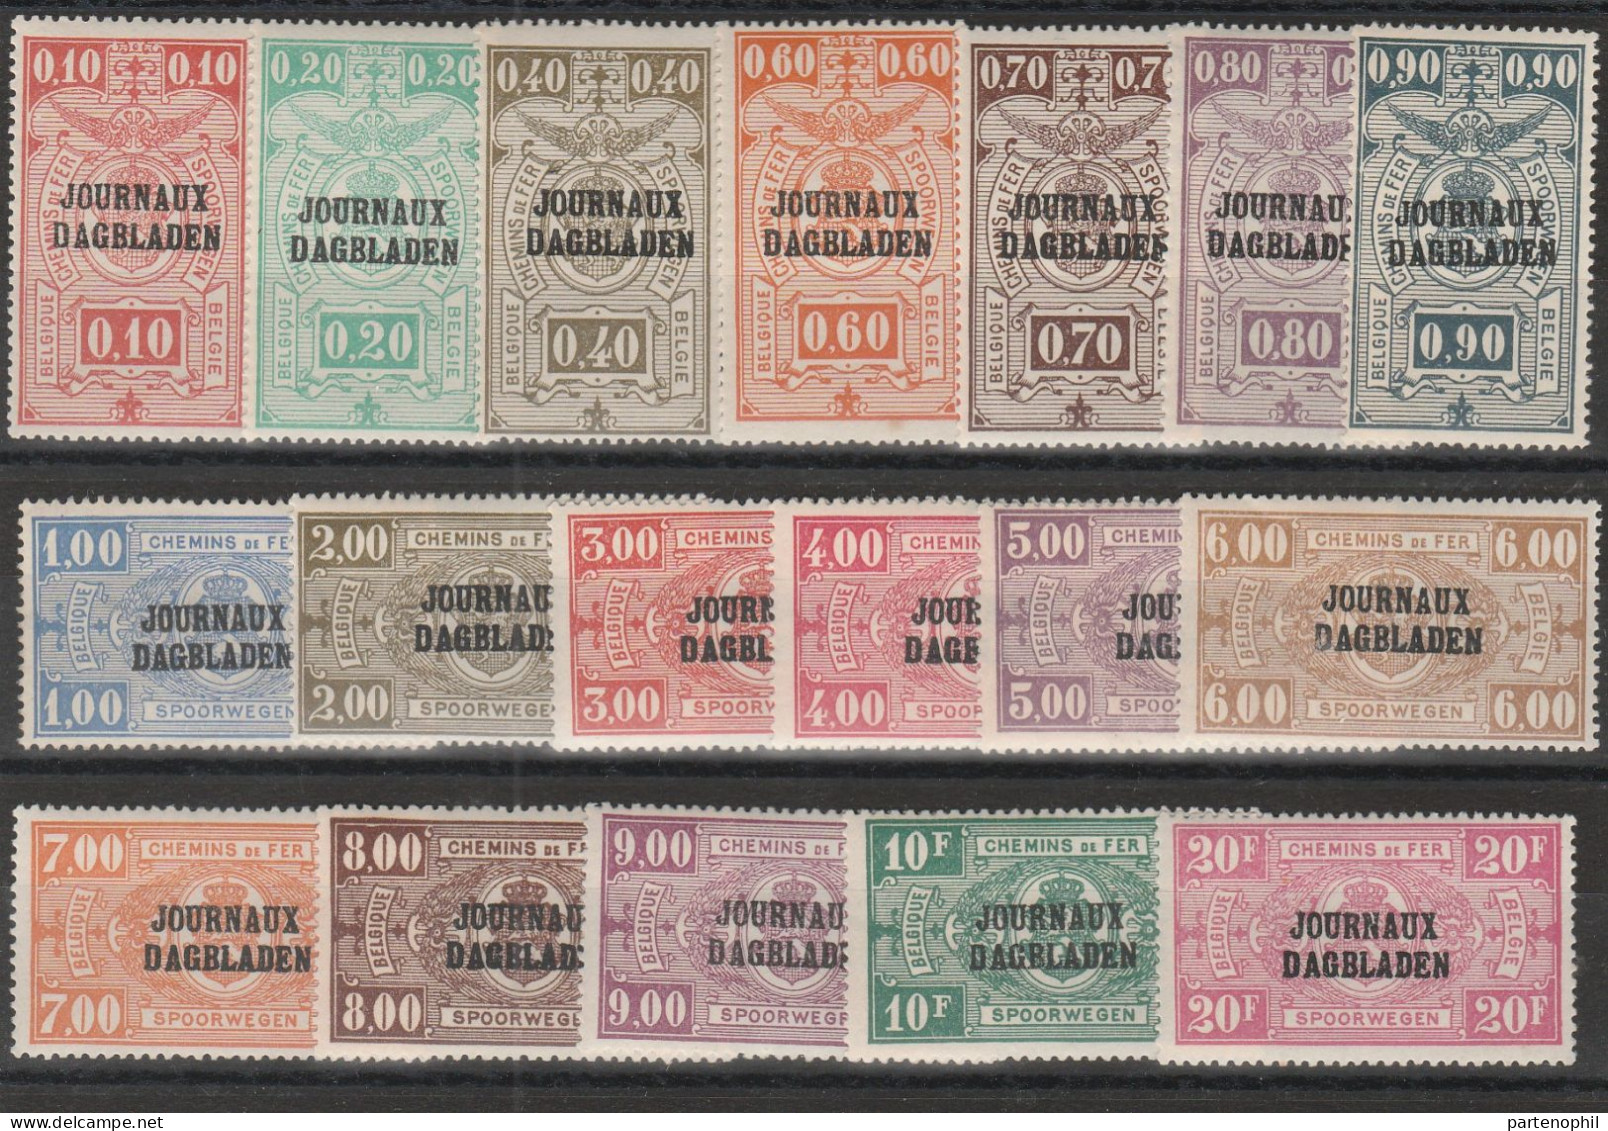 442 Belgio Belgium 1928-9 - Francobolli Per Giornali - Pacchi Postali Soprastampati N. 19/36. MH - Postfris